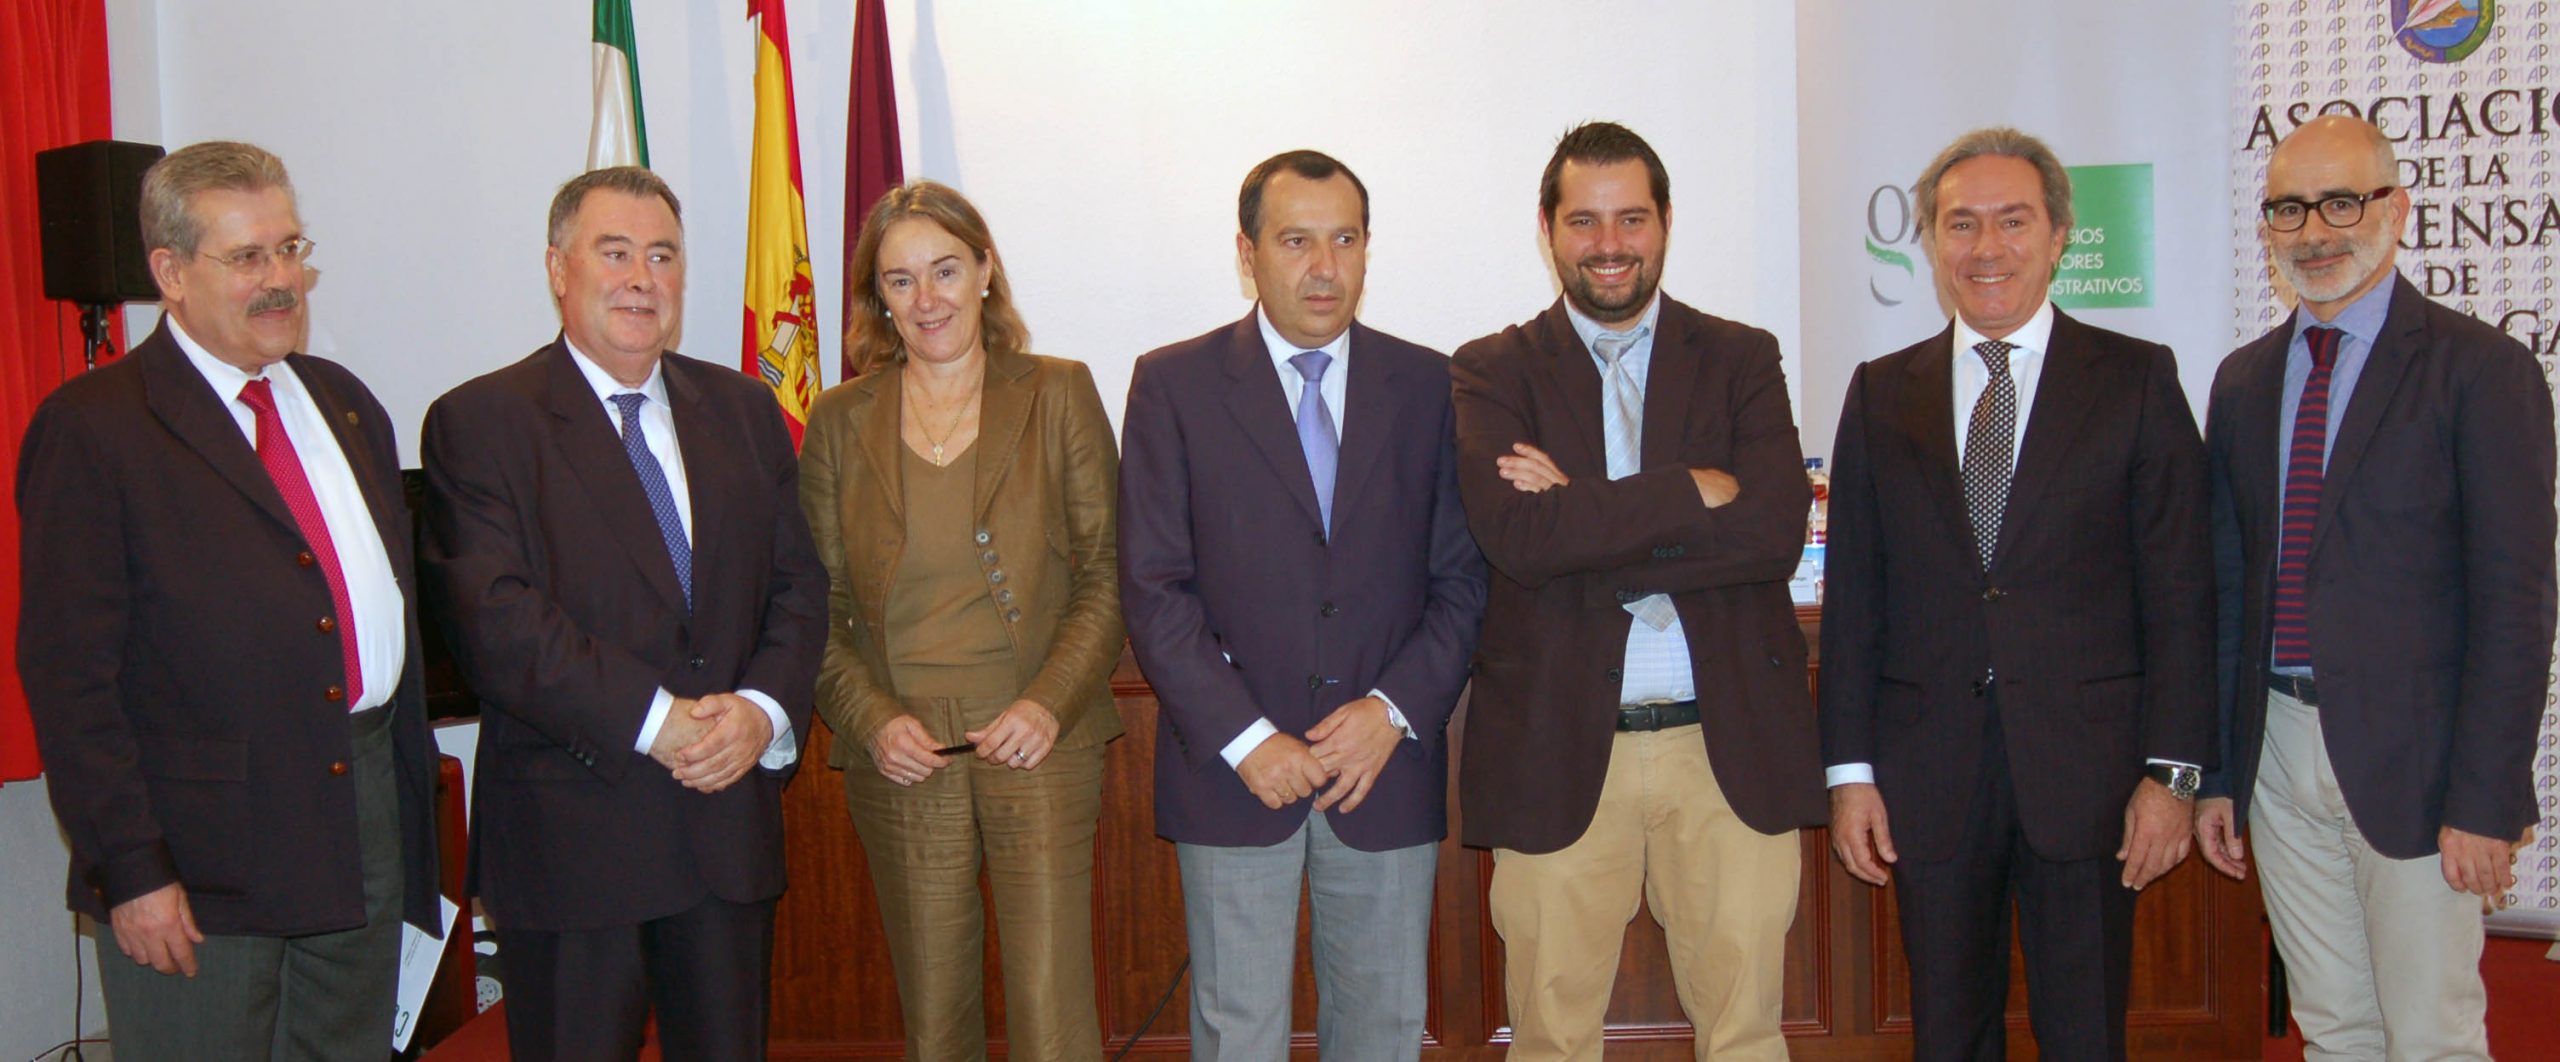 Jorge Alcántara, nuevo presidente del Consejo Andaluz | Gestores Málaga